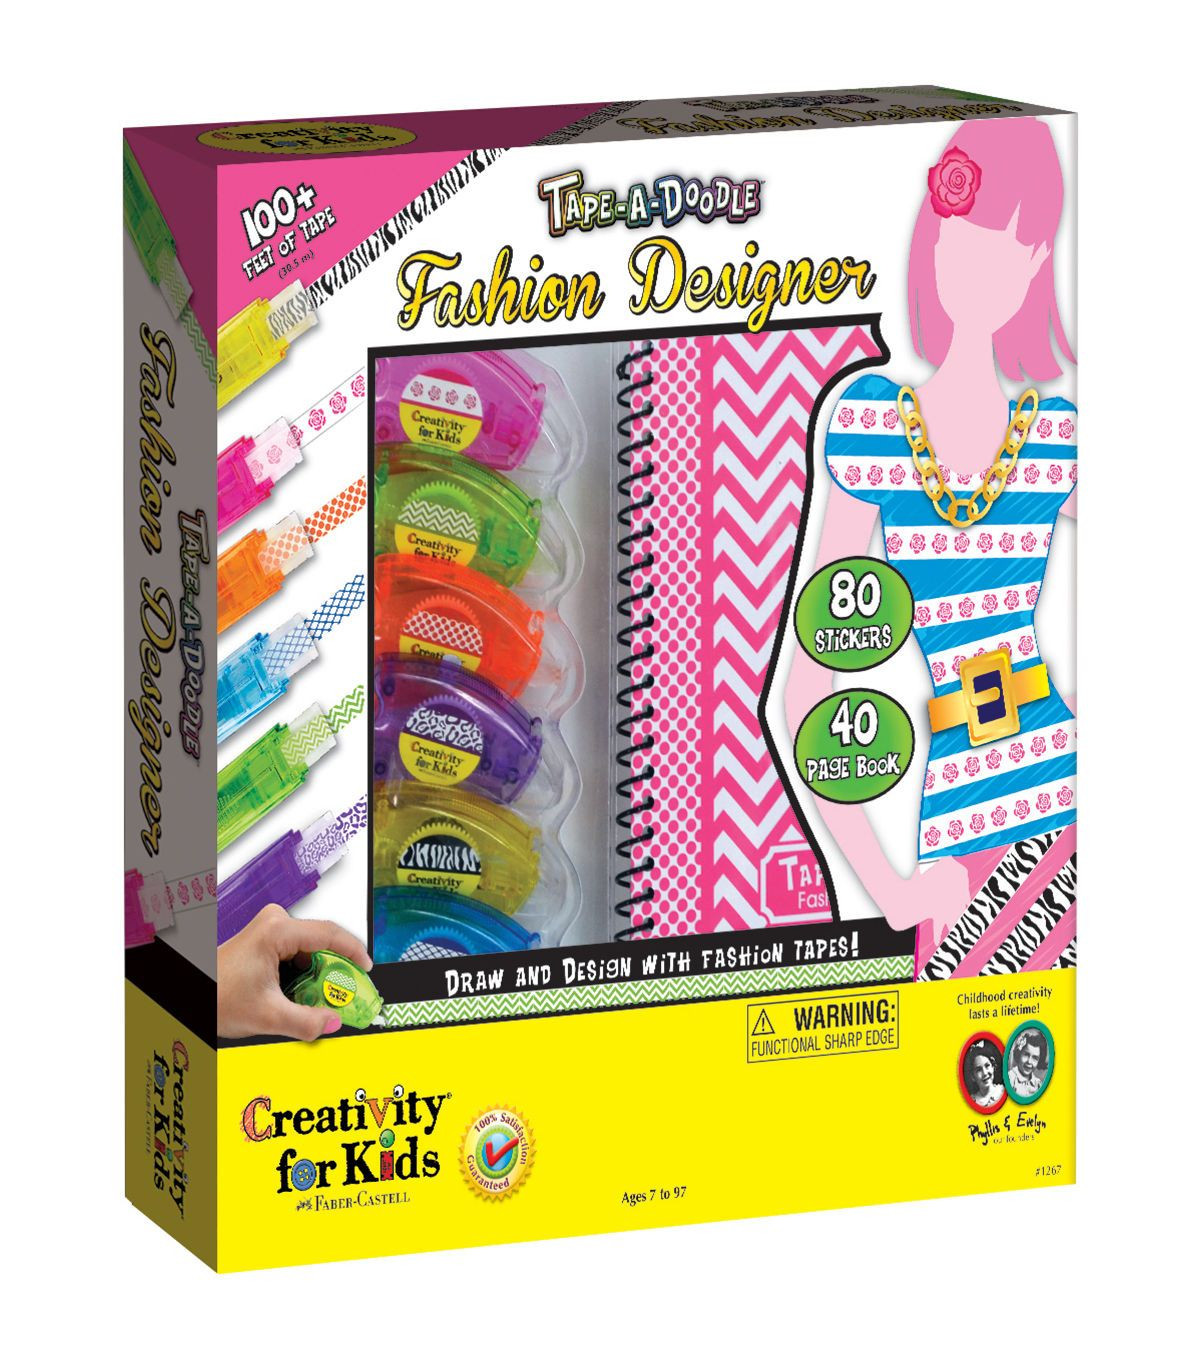 Creativity For Kids Fashion Design
 Creativity For Kids Tape A Doodle Fashion Designer Kit